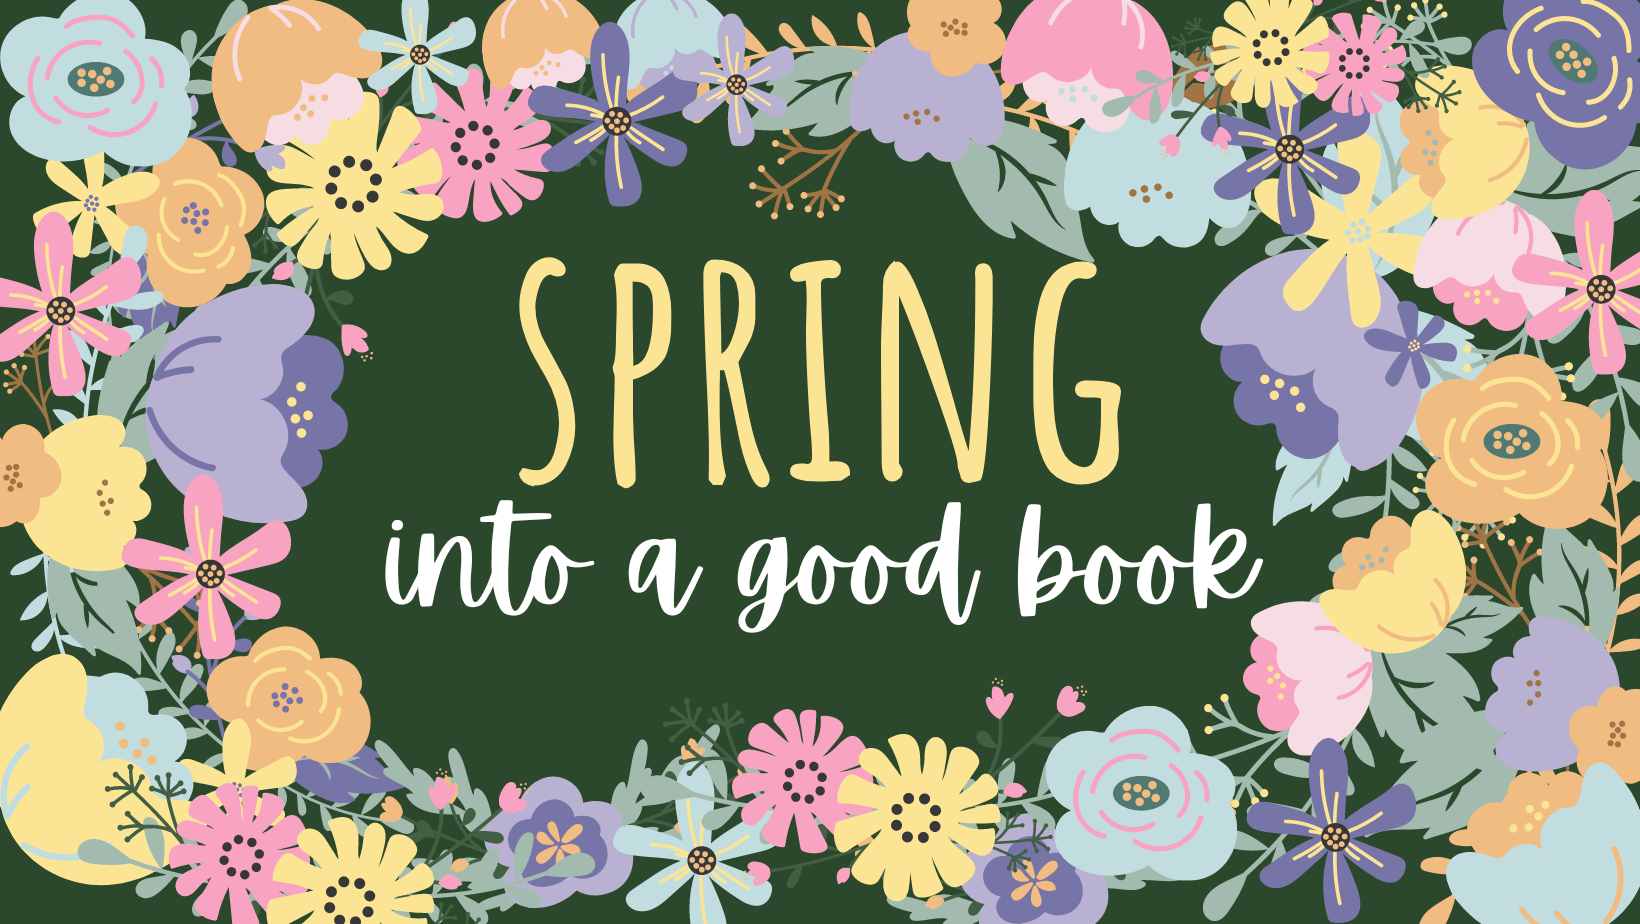 Spring into a good book